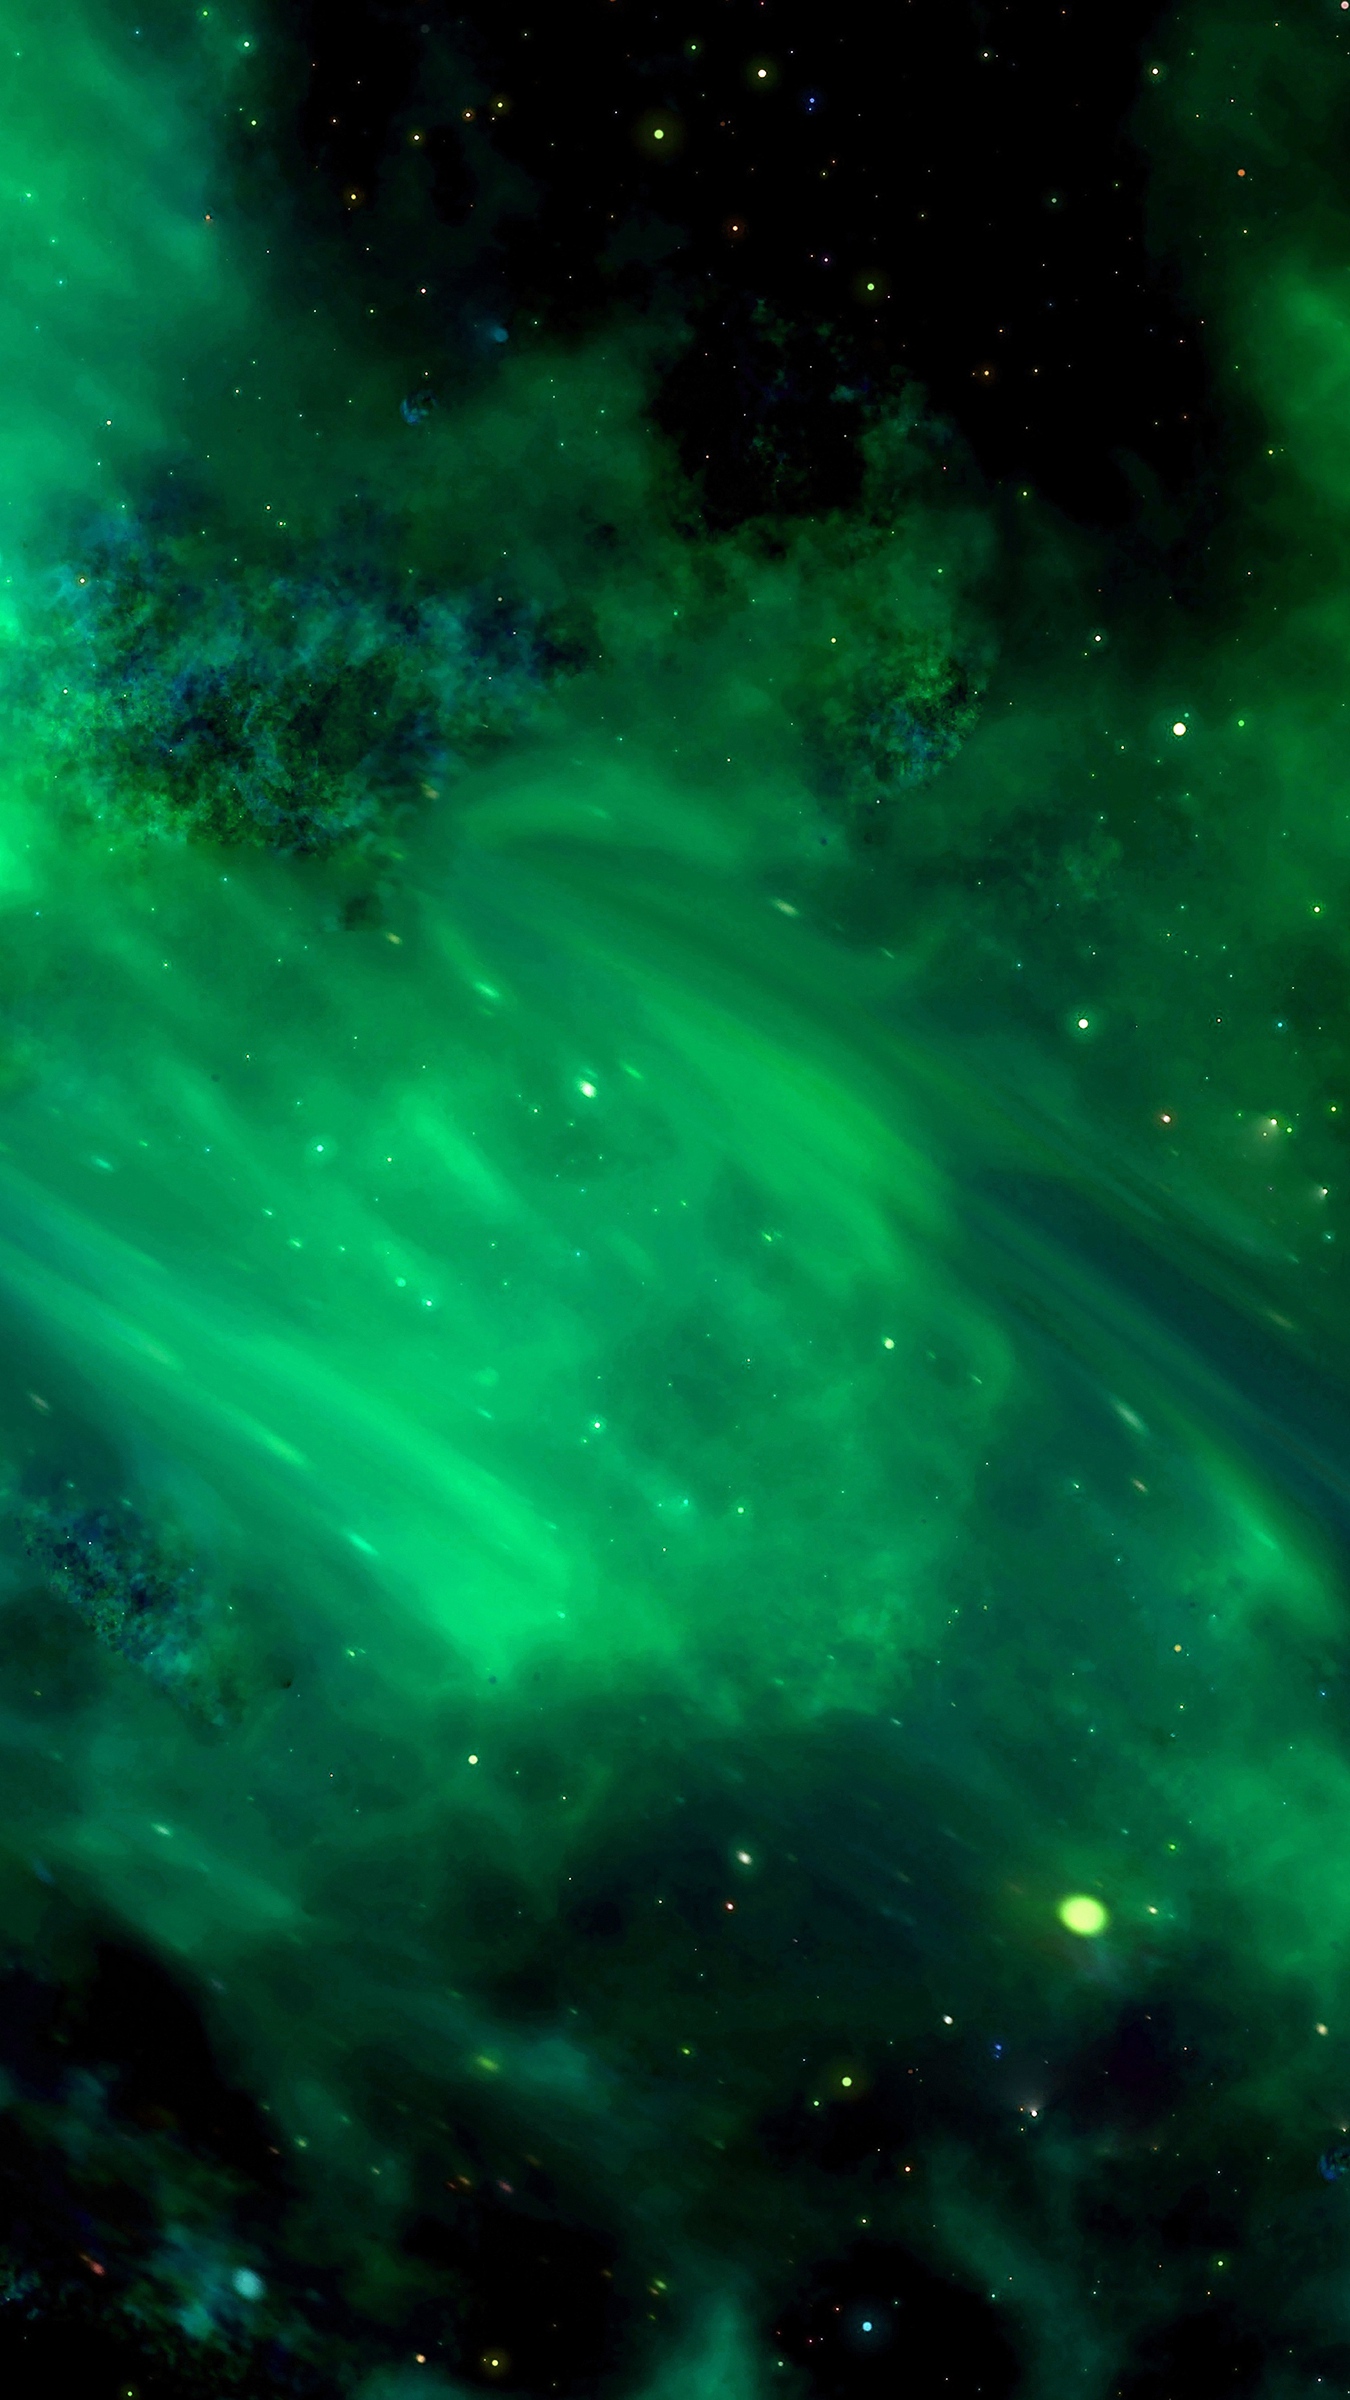 galaxy note 3 wallpaper hd 1080p,grün,natur,himmel,nebel,aurora